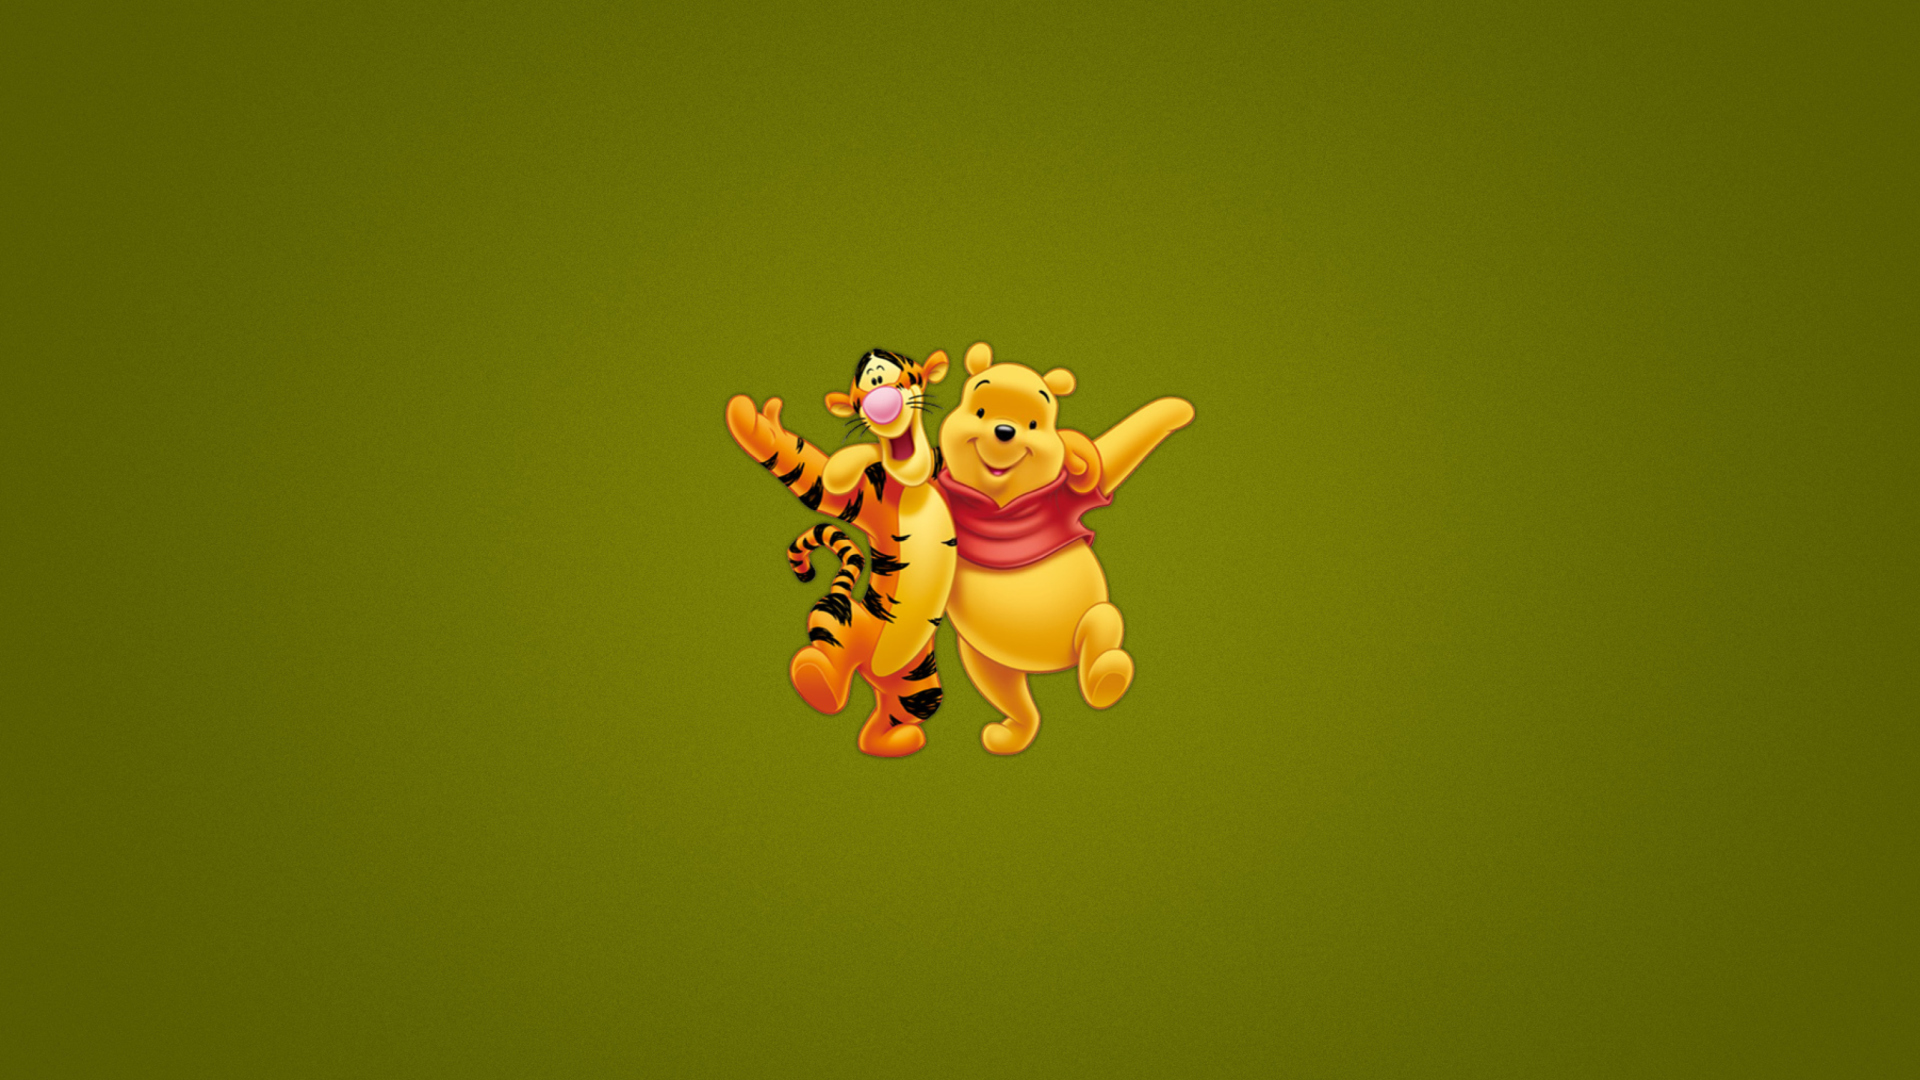 Sfondi Winnie The Pooh And Tiger 1920x1080